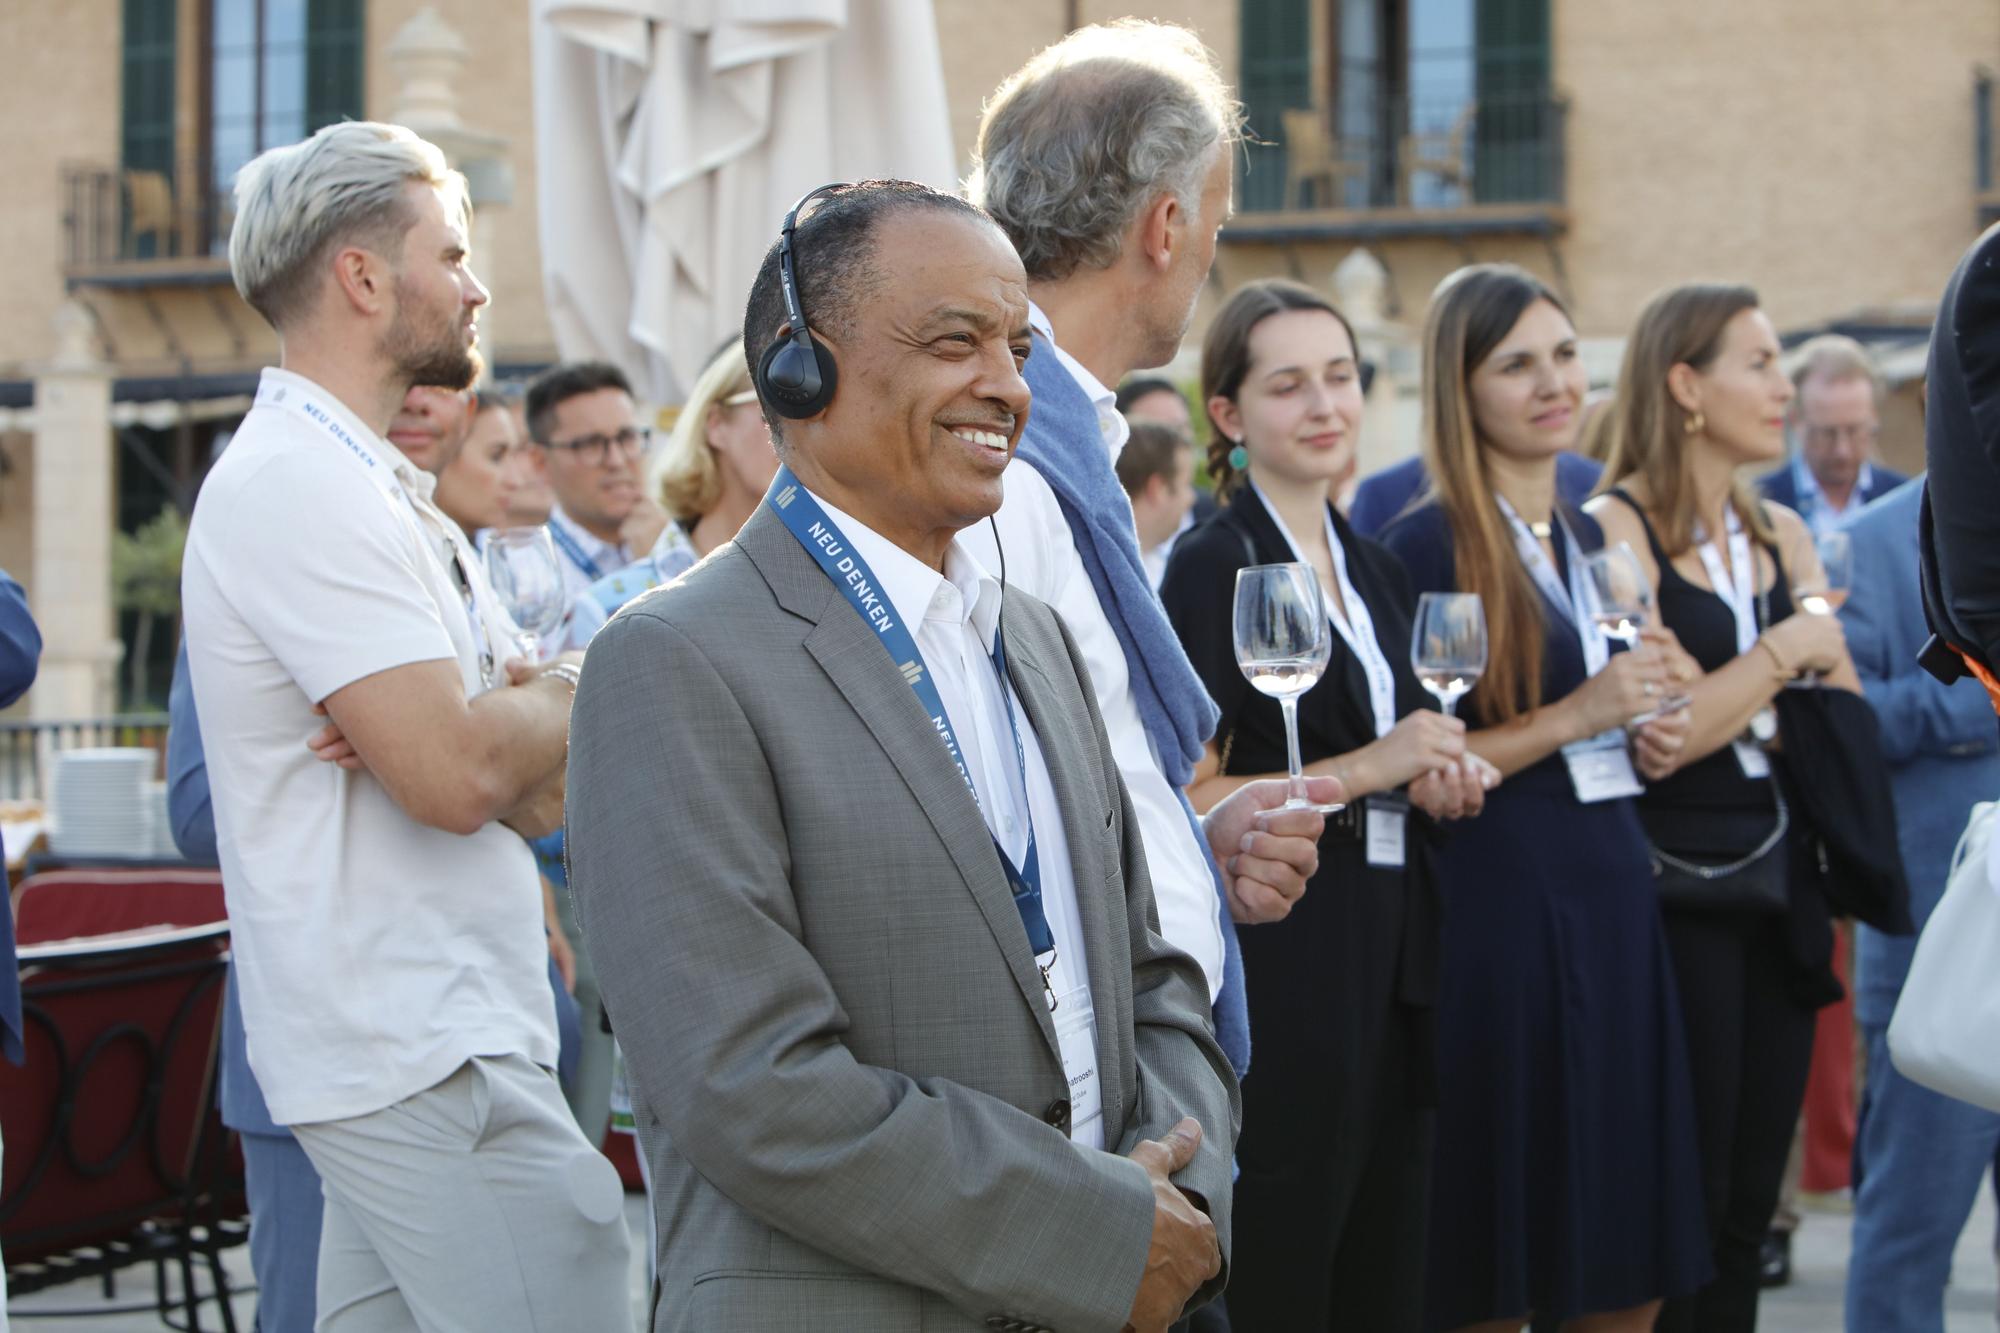 Wirtschaftsforum Neu Denken versammelt deutsche Manager und Politiker auf Mallorca